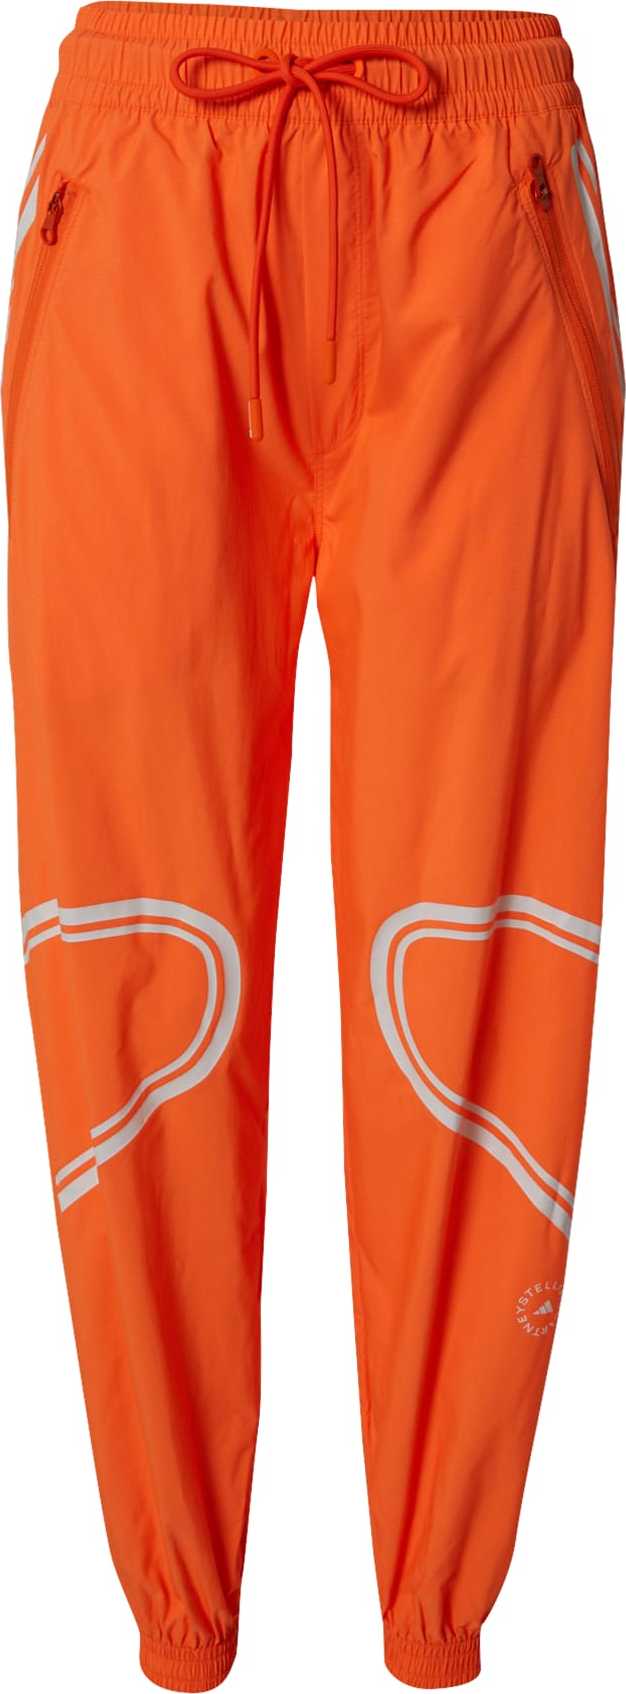 adidas by Stella McCartney Outdoorové kalhoty 'TruePace' oranžová / stříbrně šedá